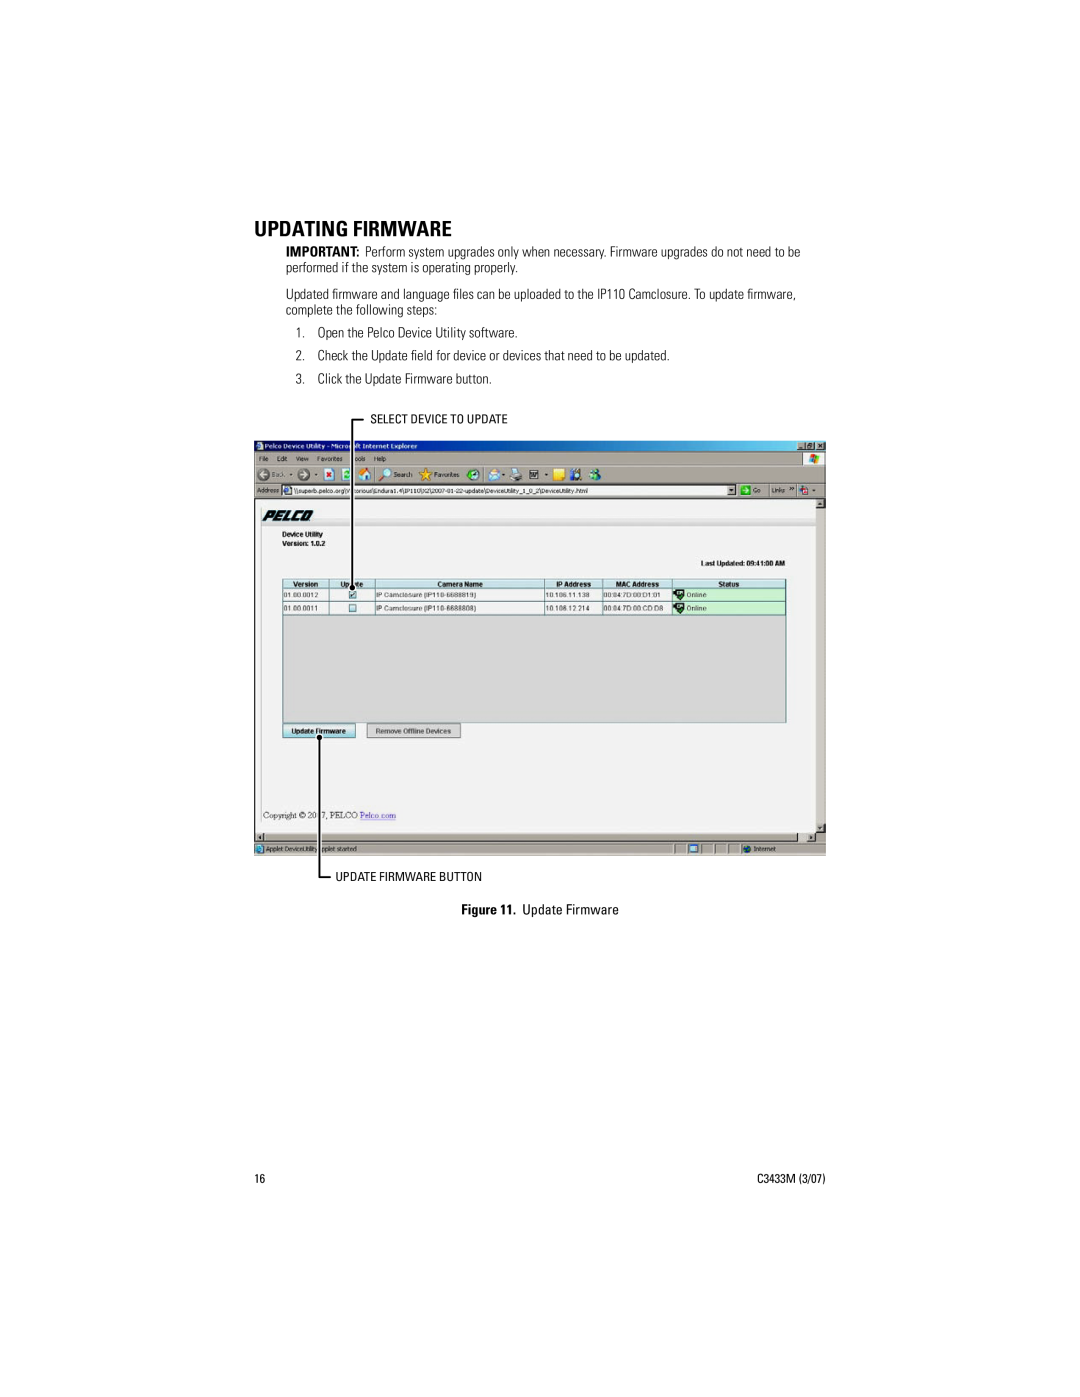 Pelco C3433M (3/07) manual Updating Firmware 